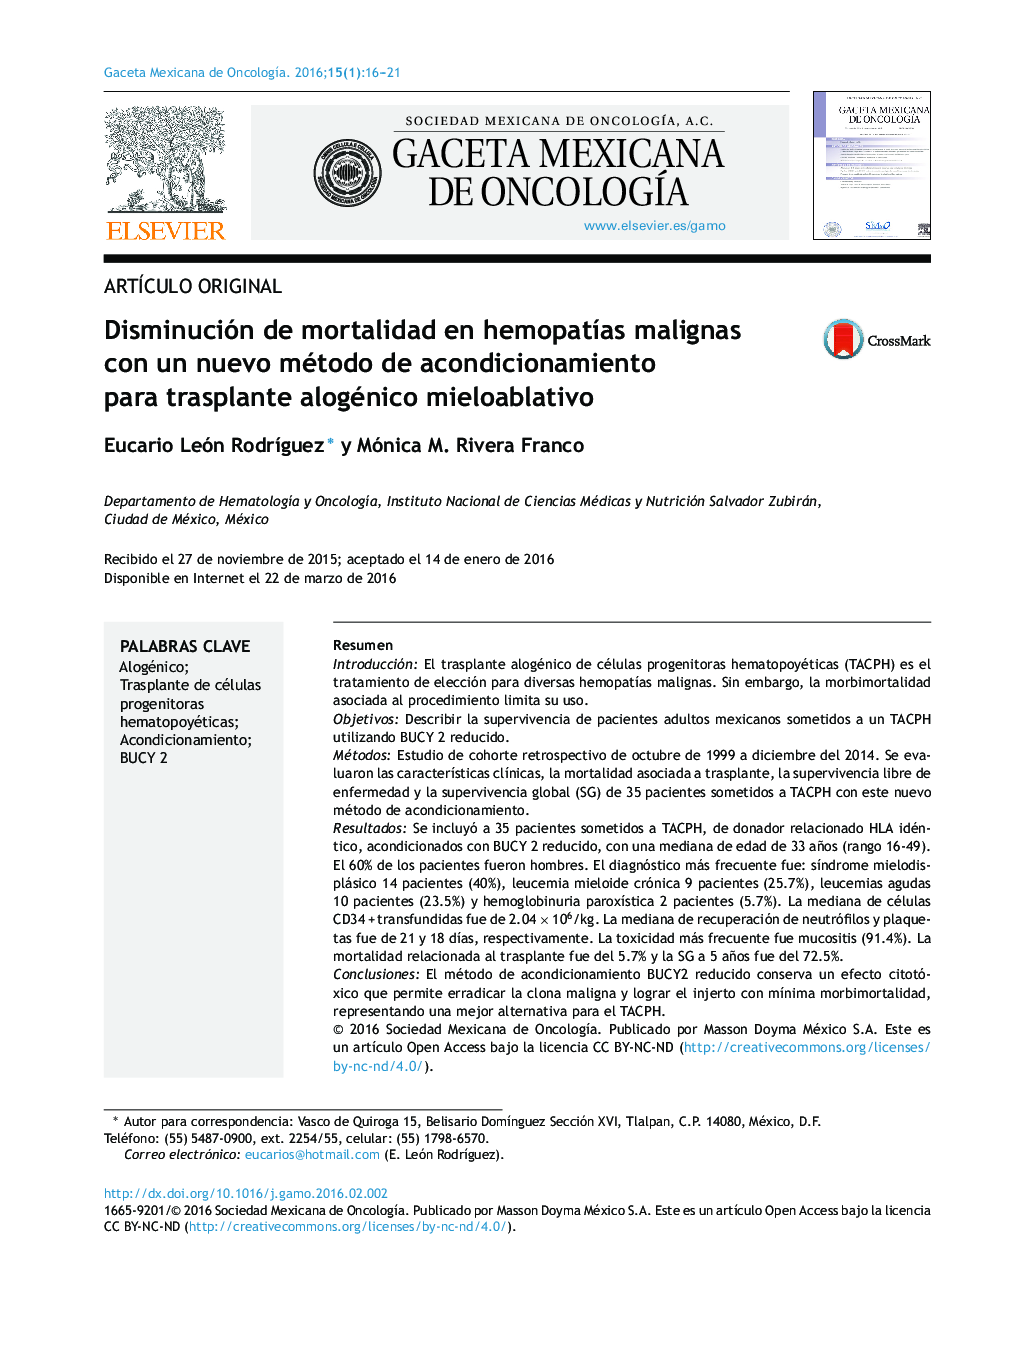 Disminución de mortalidad en hemopatías malignas con un nuevo método de acondicionamiento para trasplante alogénico mieloablativo